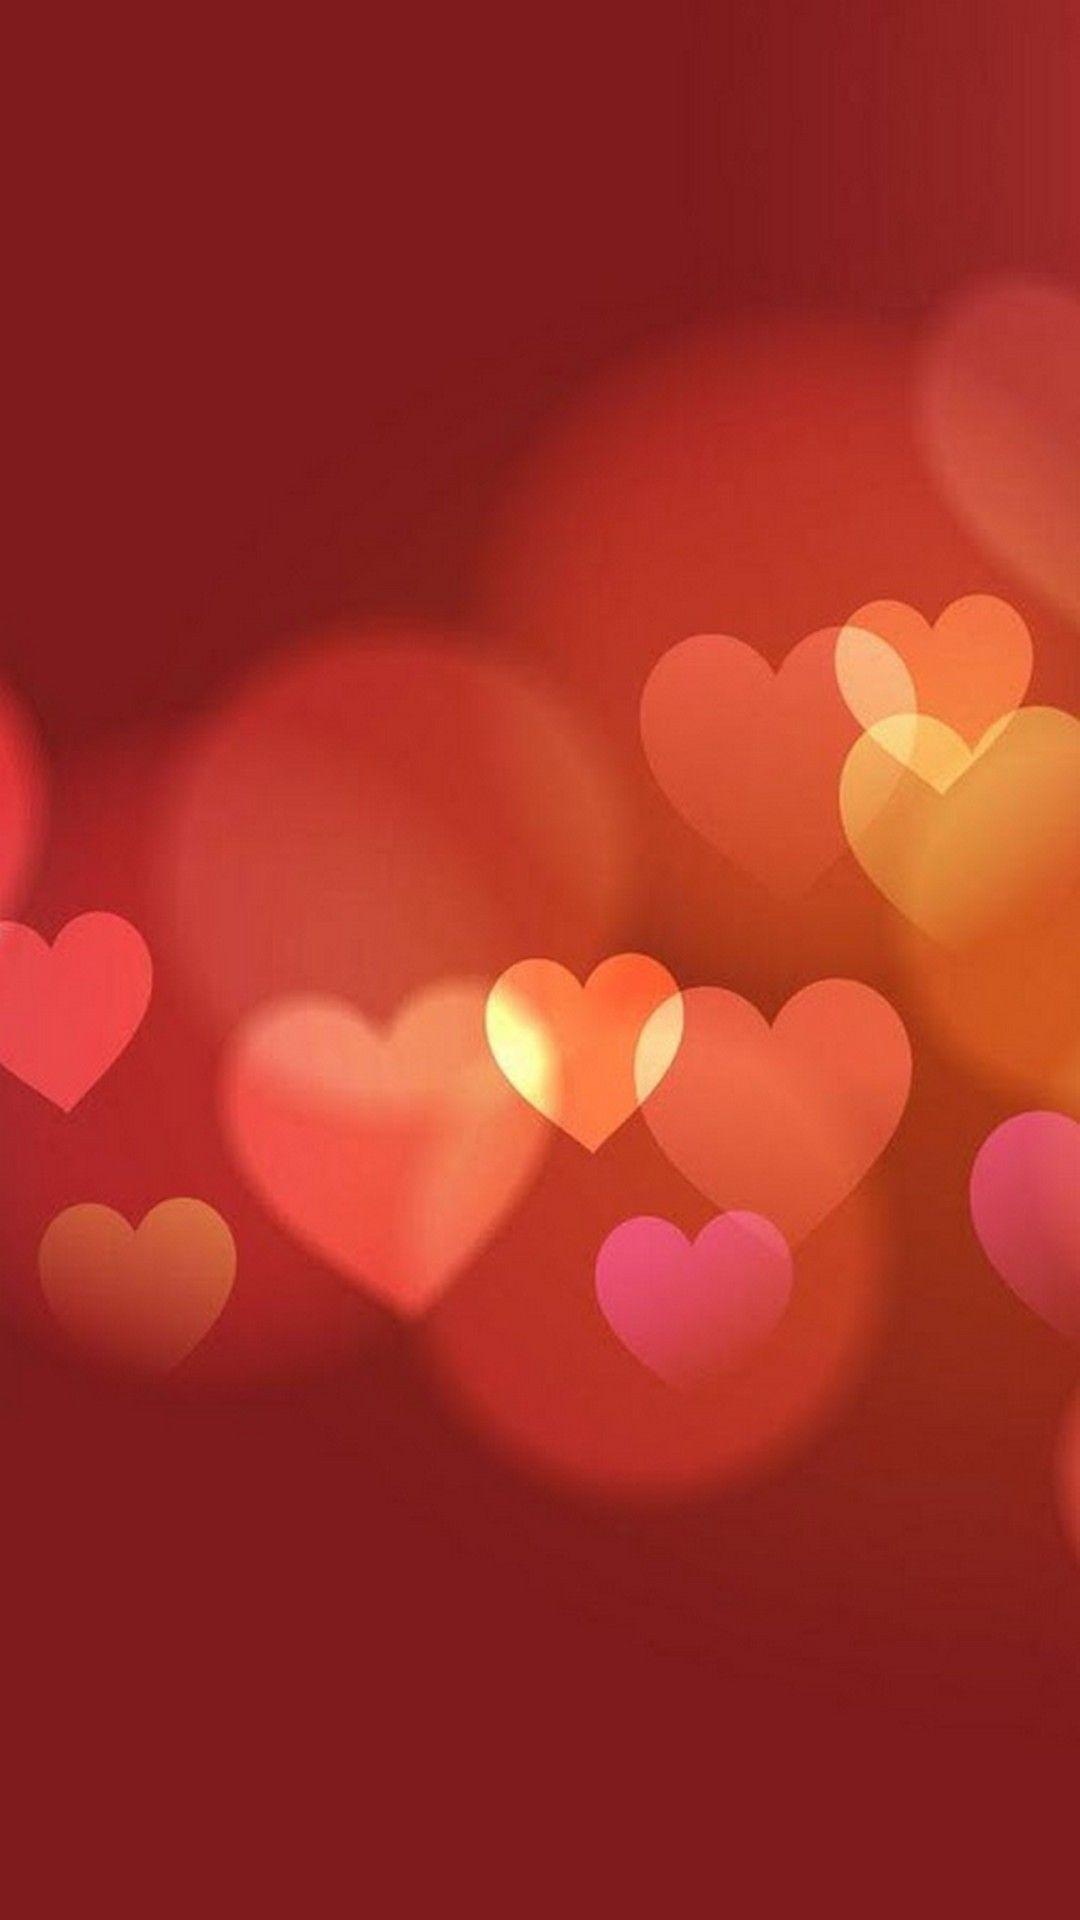 Valentine Background Picture. Valentines wallpaper, Heart iphone wallpaper, Valentine background